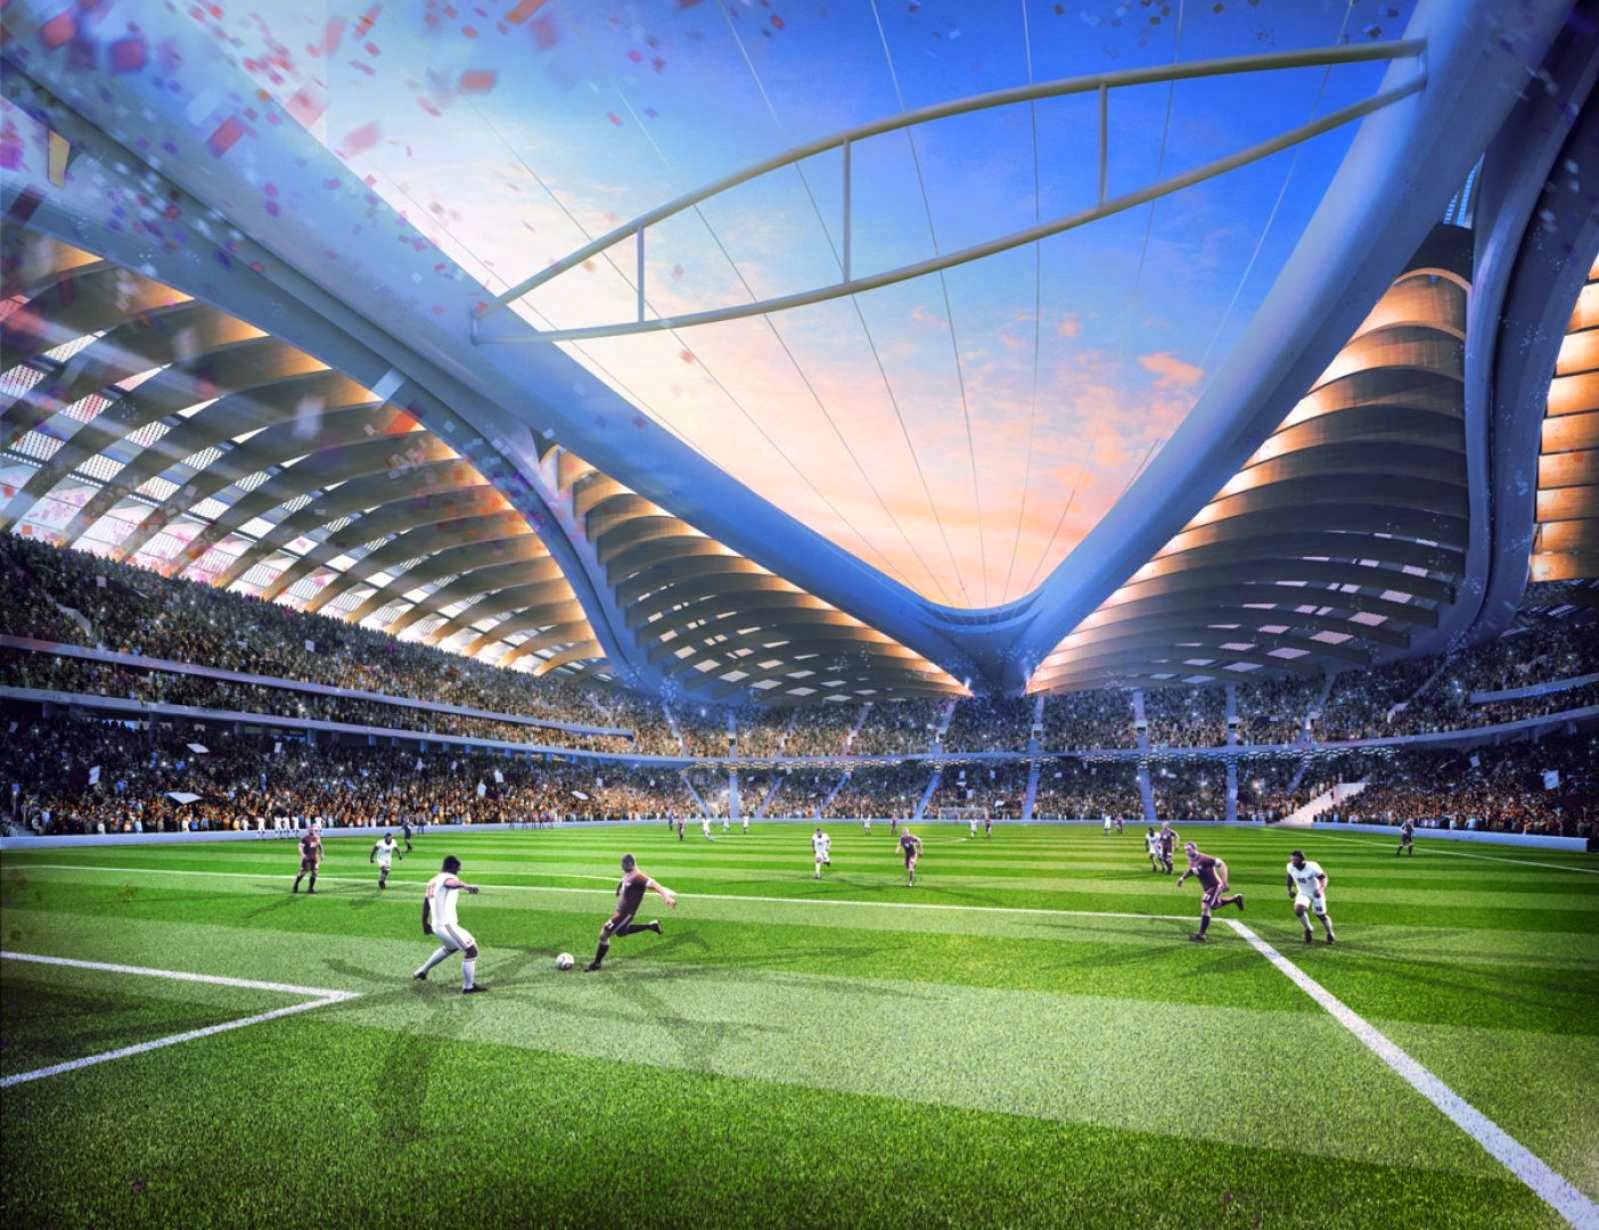 World stadiums. Футбольный стадион 2022 Катар Заха Хадид. Стадион в Катаре Заха Хадид. Стадион Аль Джануб. Аль Вакра стадион.